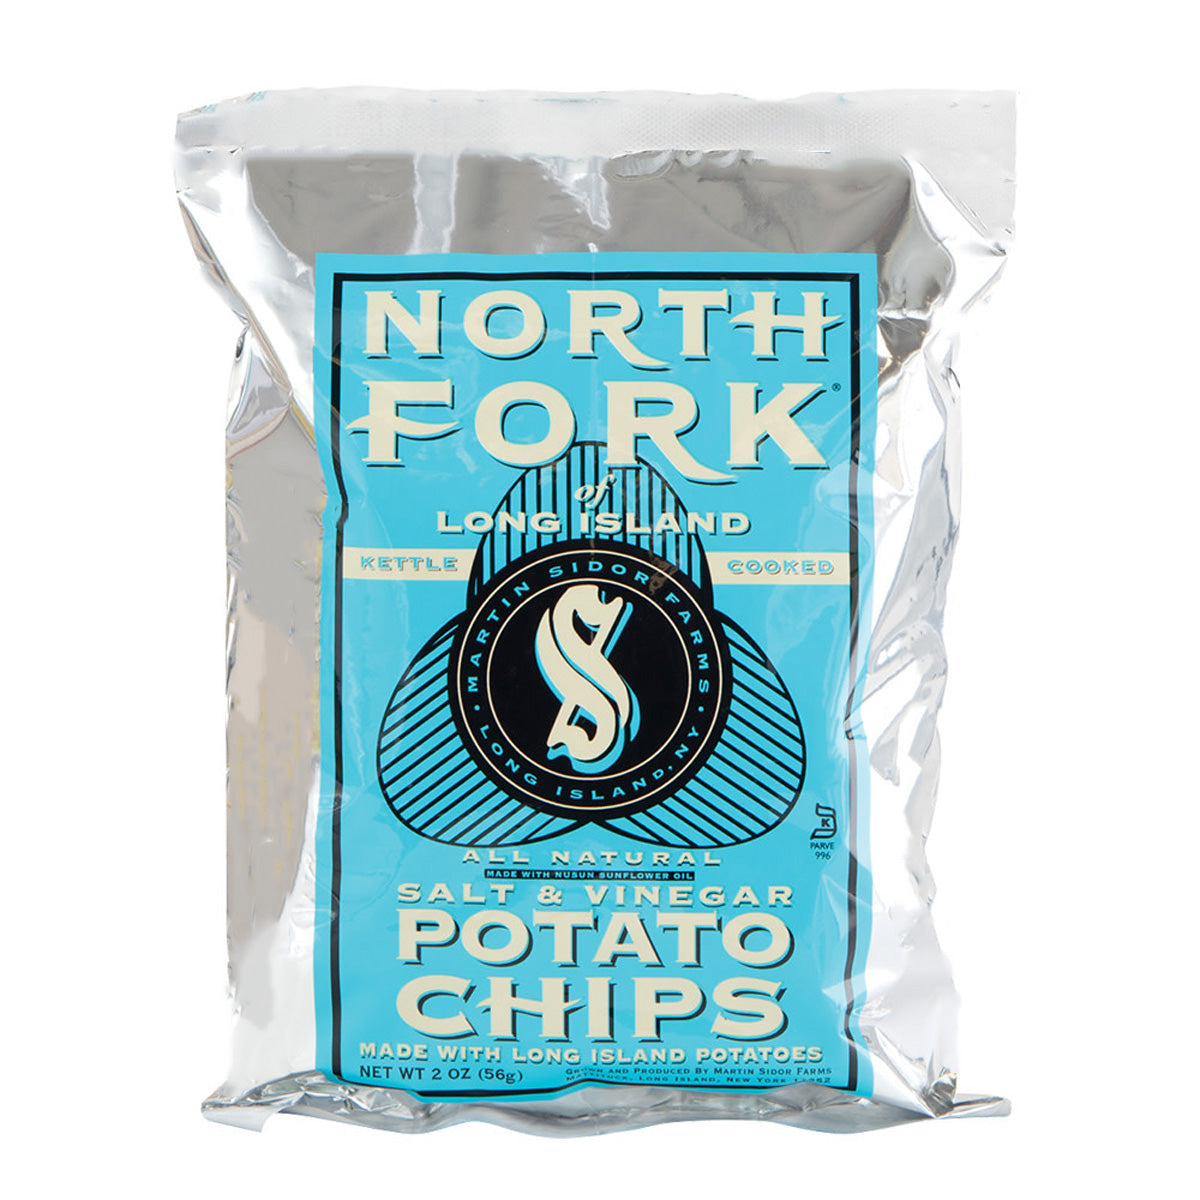 North Fork Potato Chips Salt & Vinegar Potato Chips 2 OZ